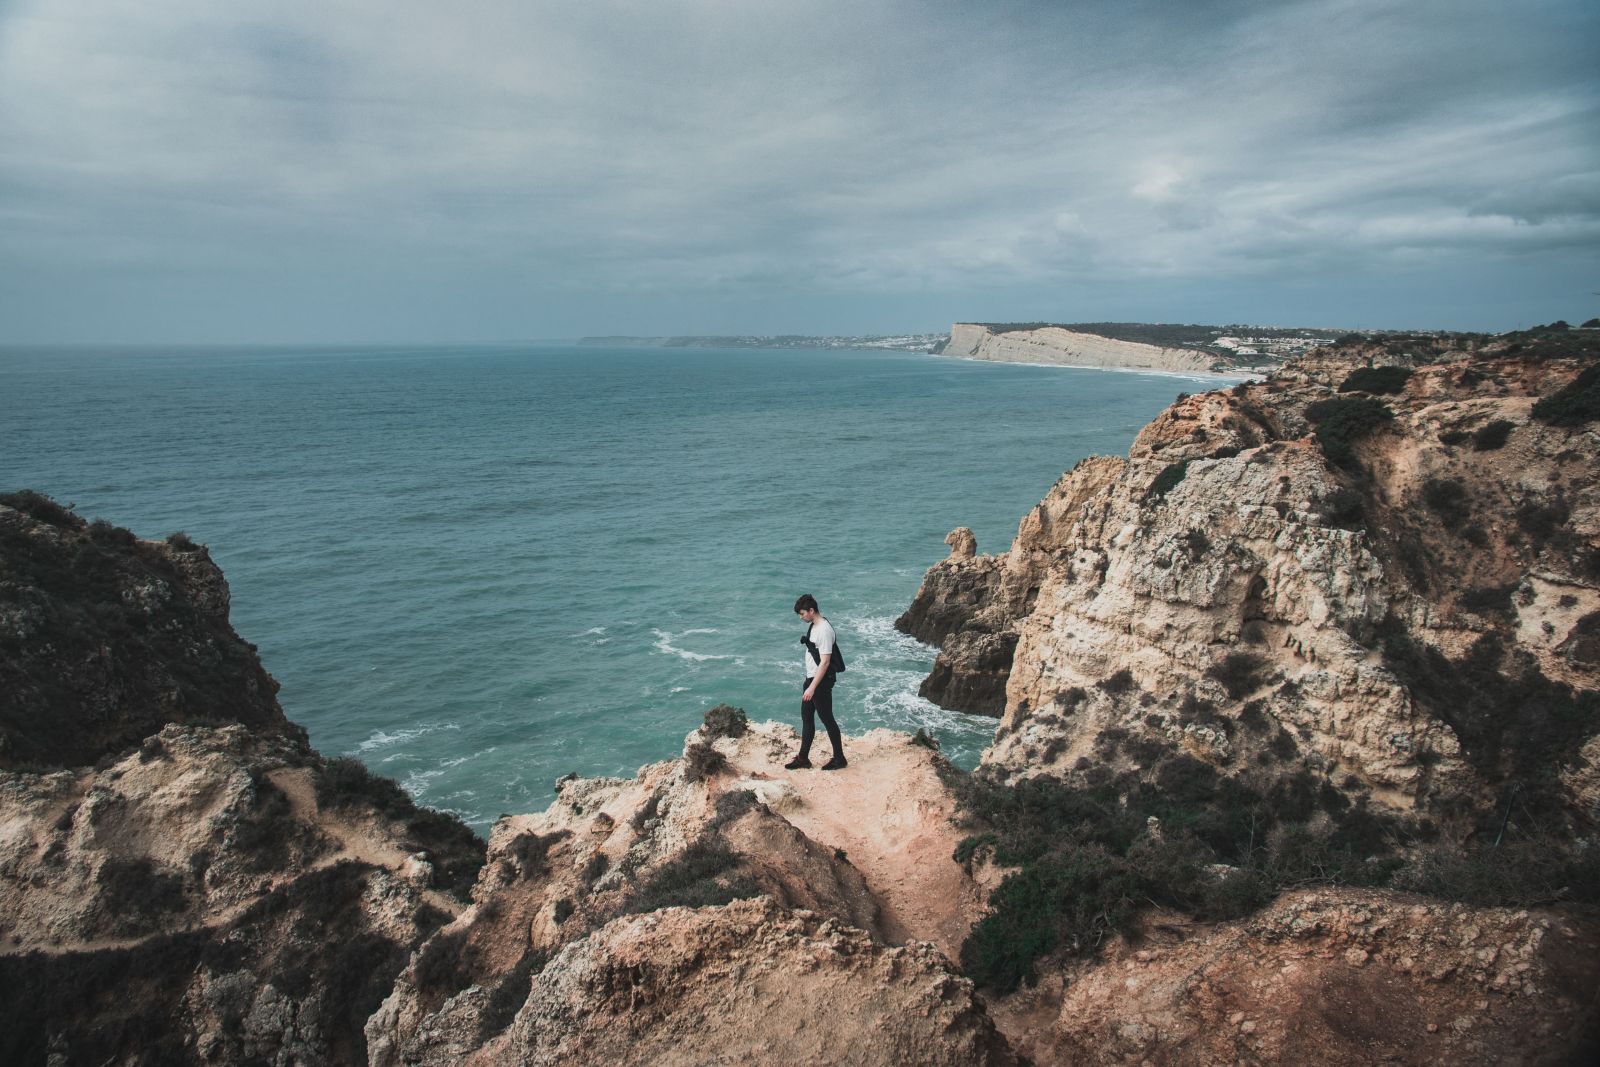 View of the coast in Faro, Portugal.